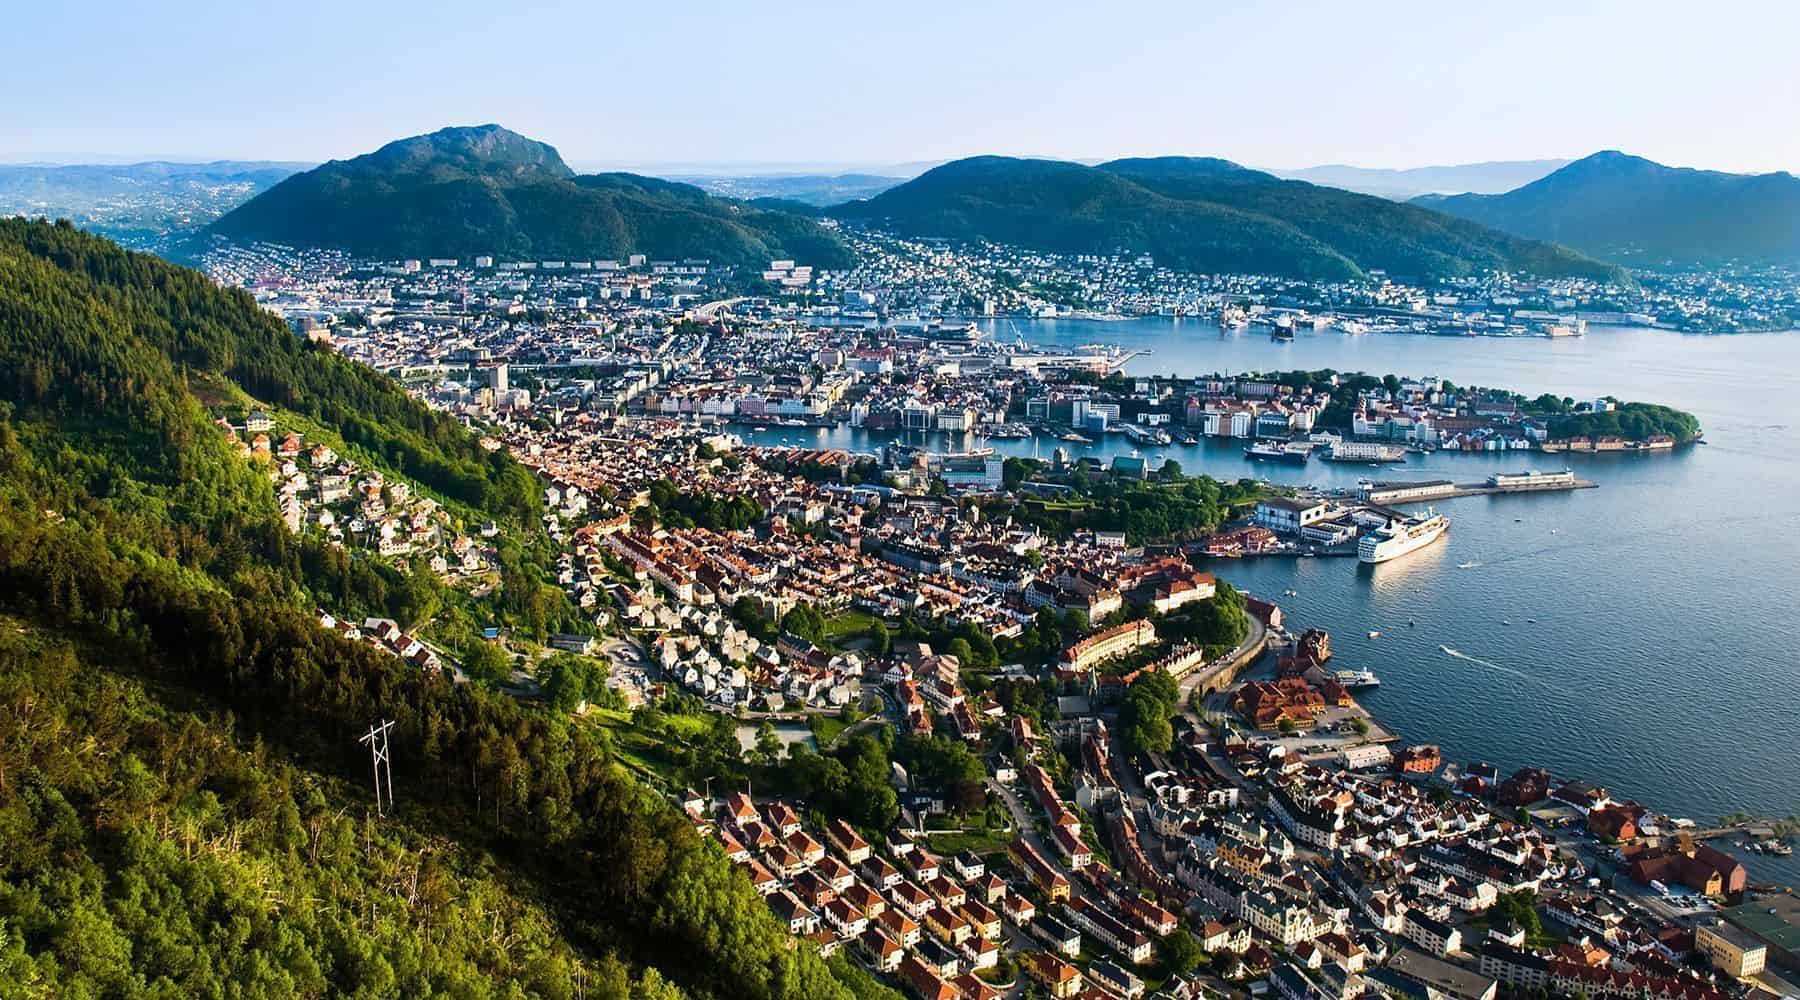 Bergen seen from above